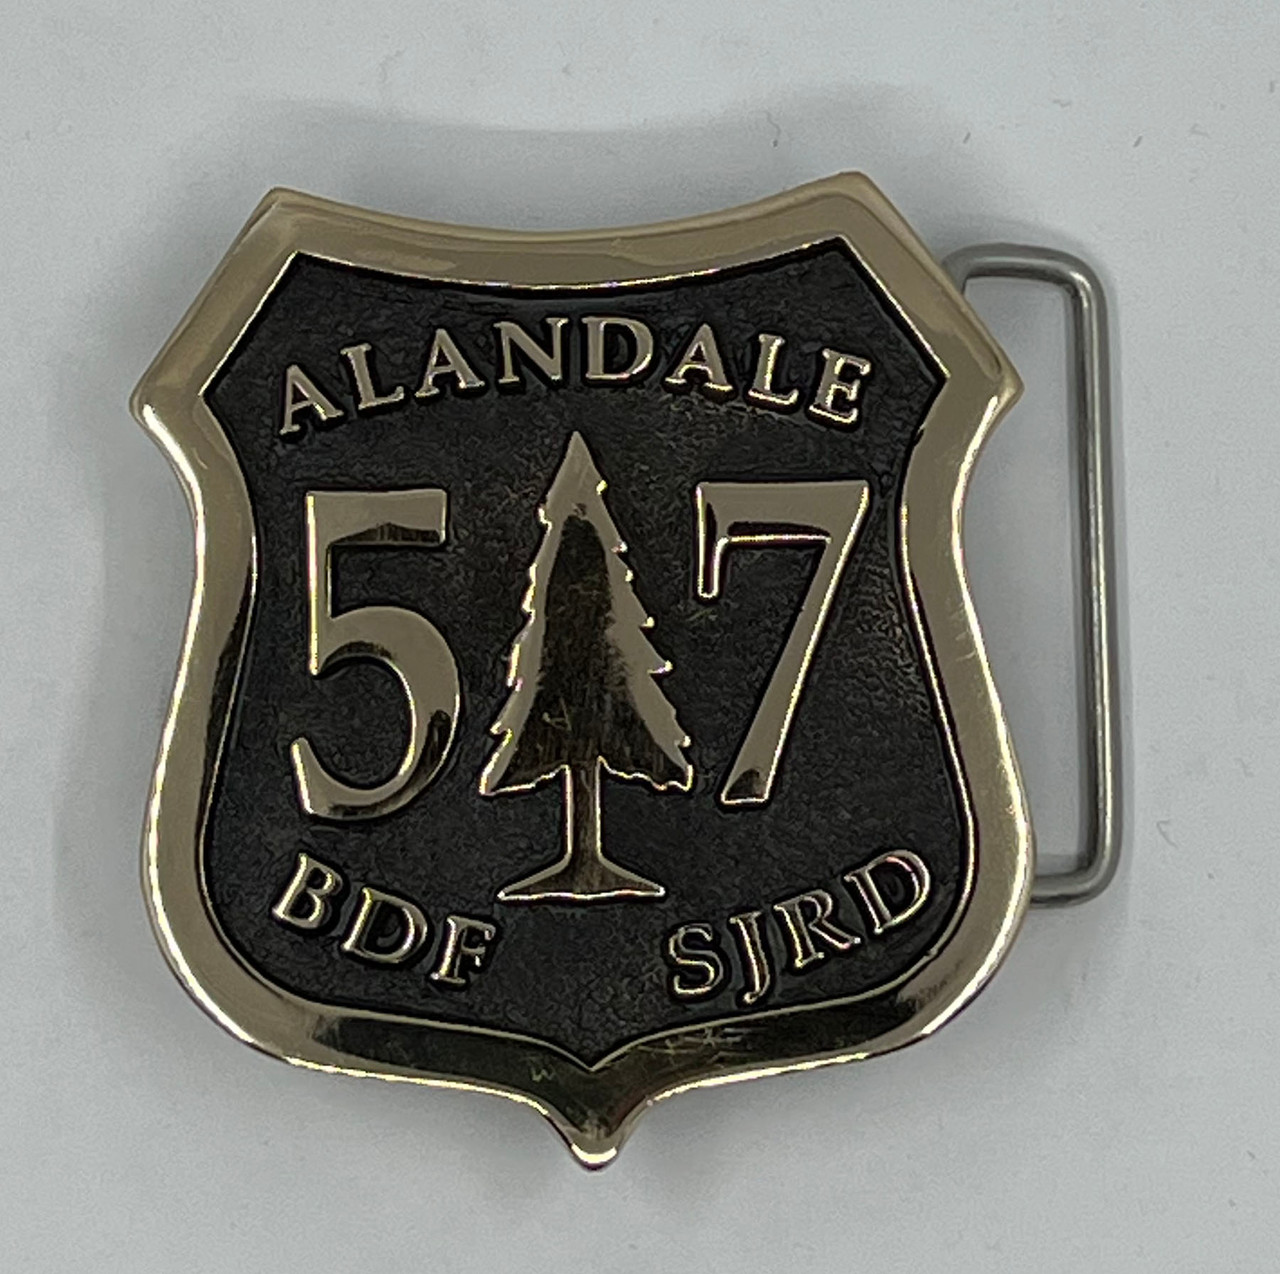 Alandale 57 BDF SJRD Buckle (RESTRICTED)